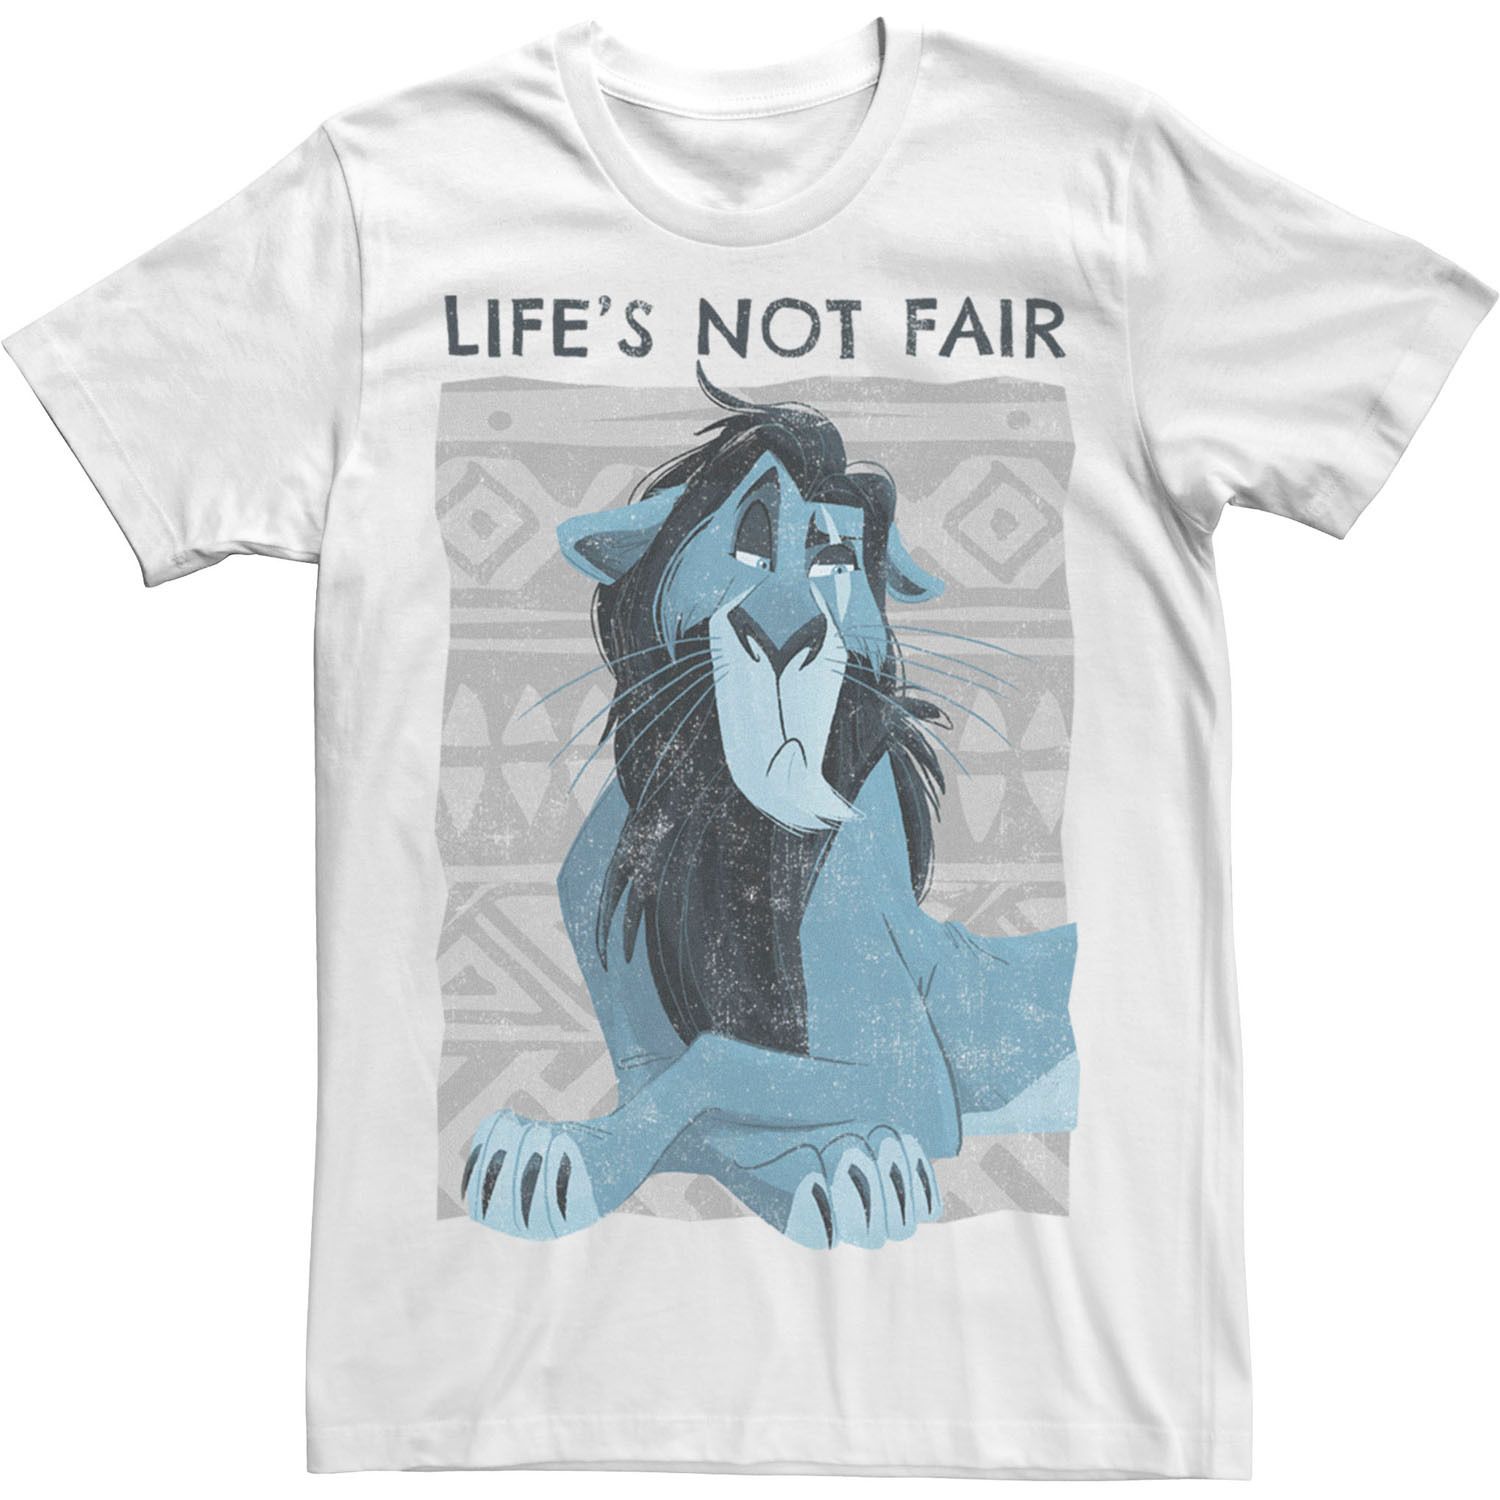 Мужская футболка Disney The Lion King Scar Life's Not Fair Licensed Character футболка lion king scar unleashed disney черный